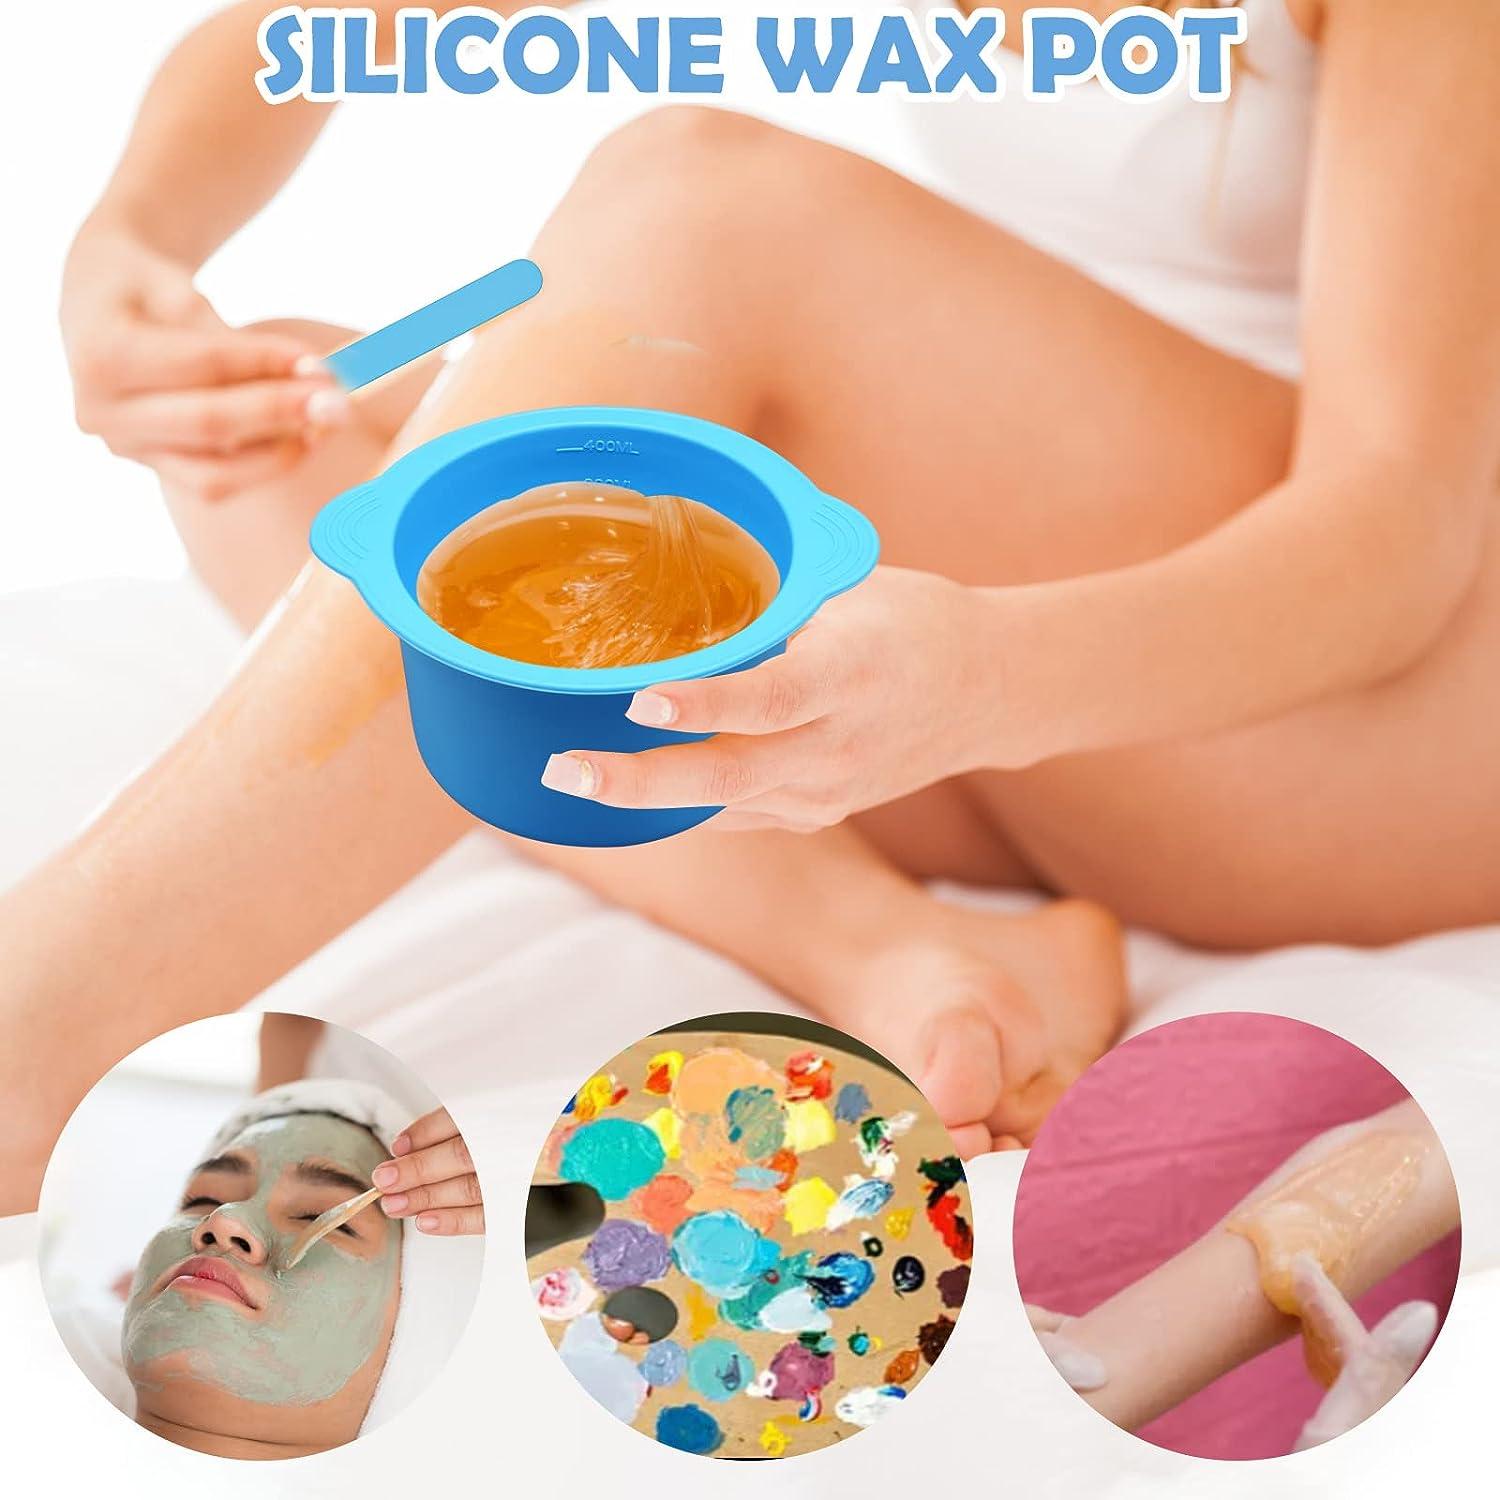 Silicone Wax Pot, 400g, Reusable